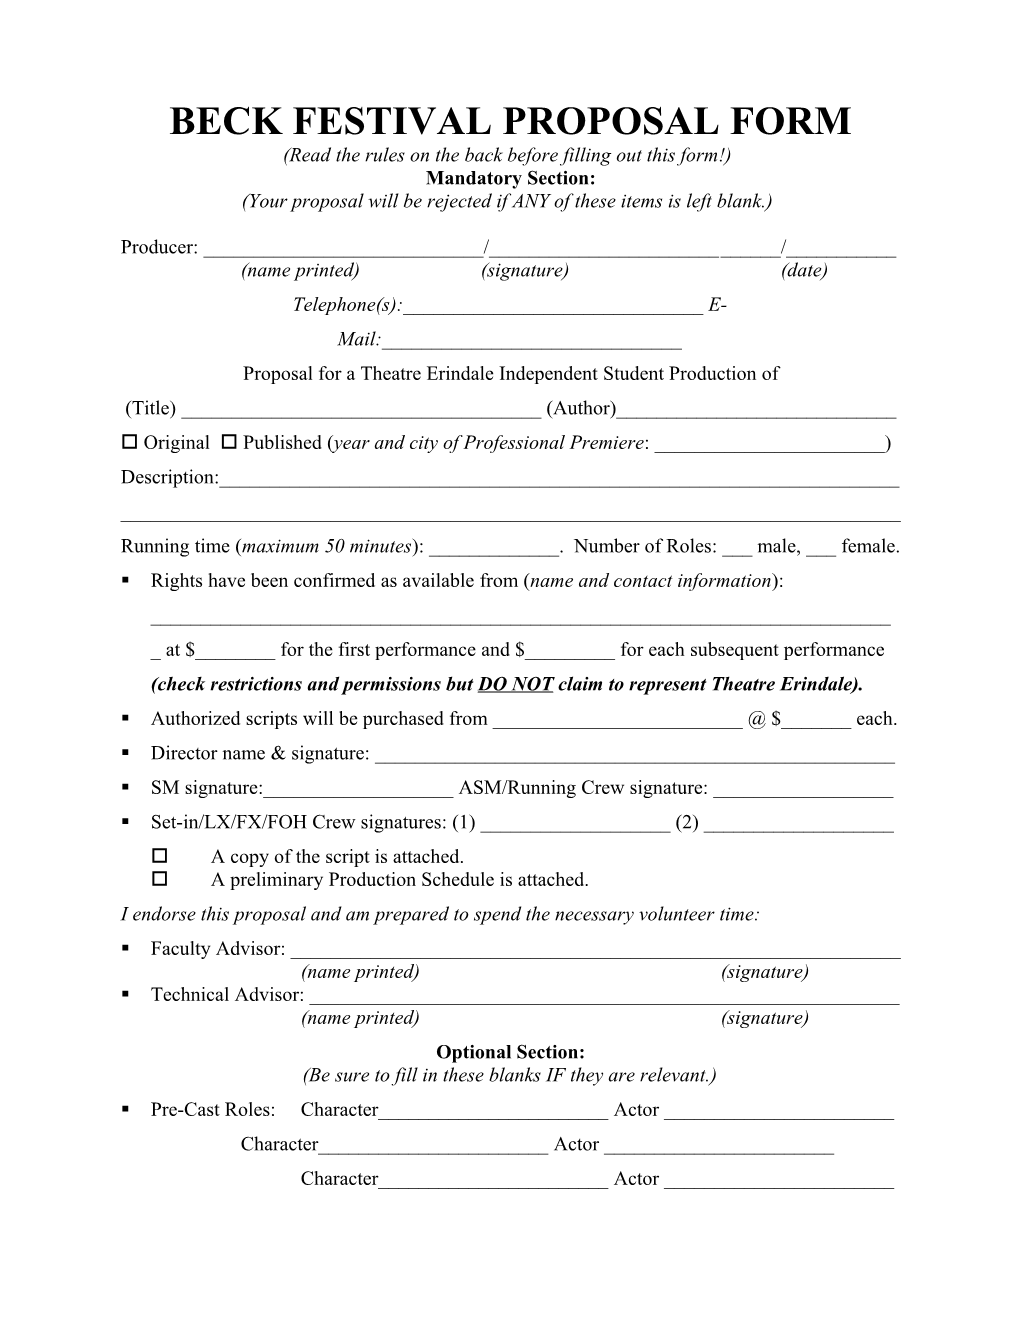 Beck Festival Proposal Form